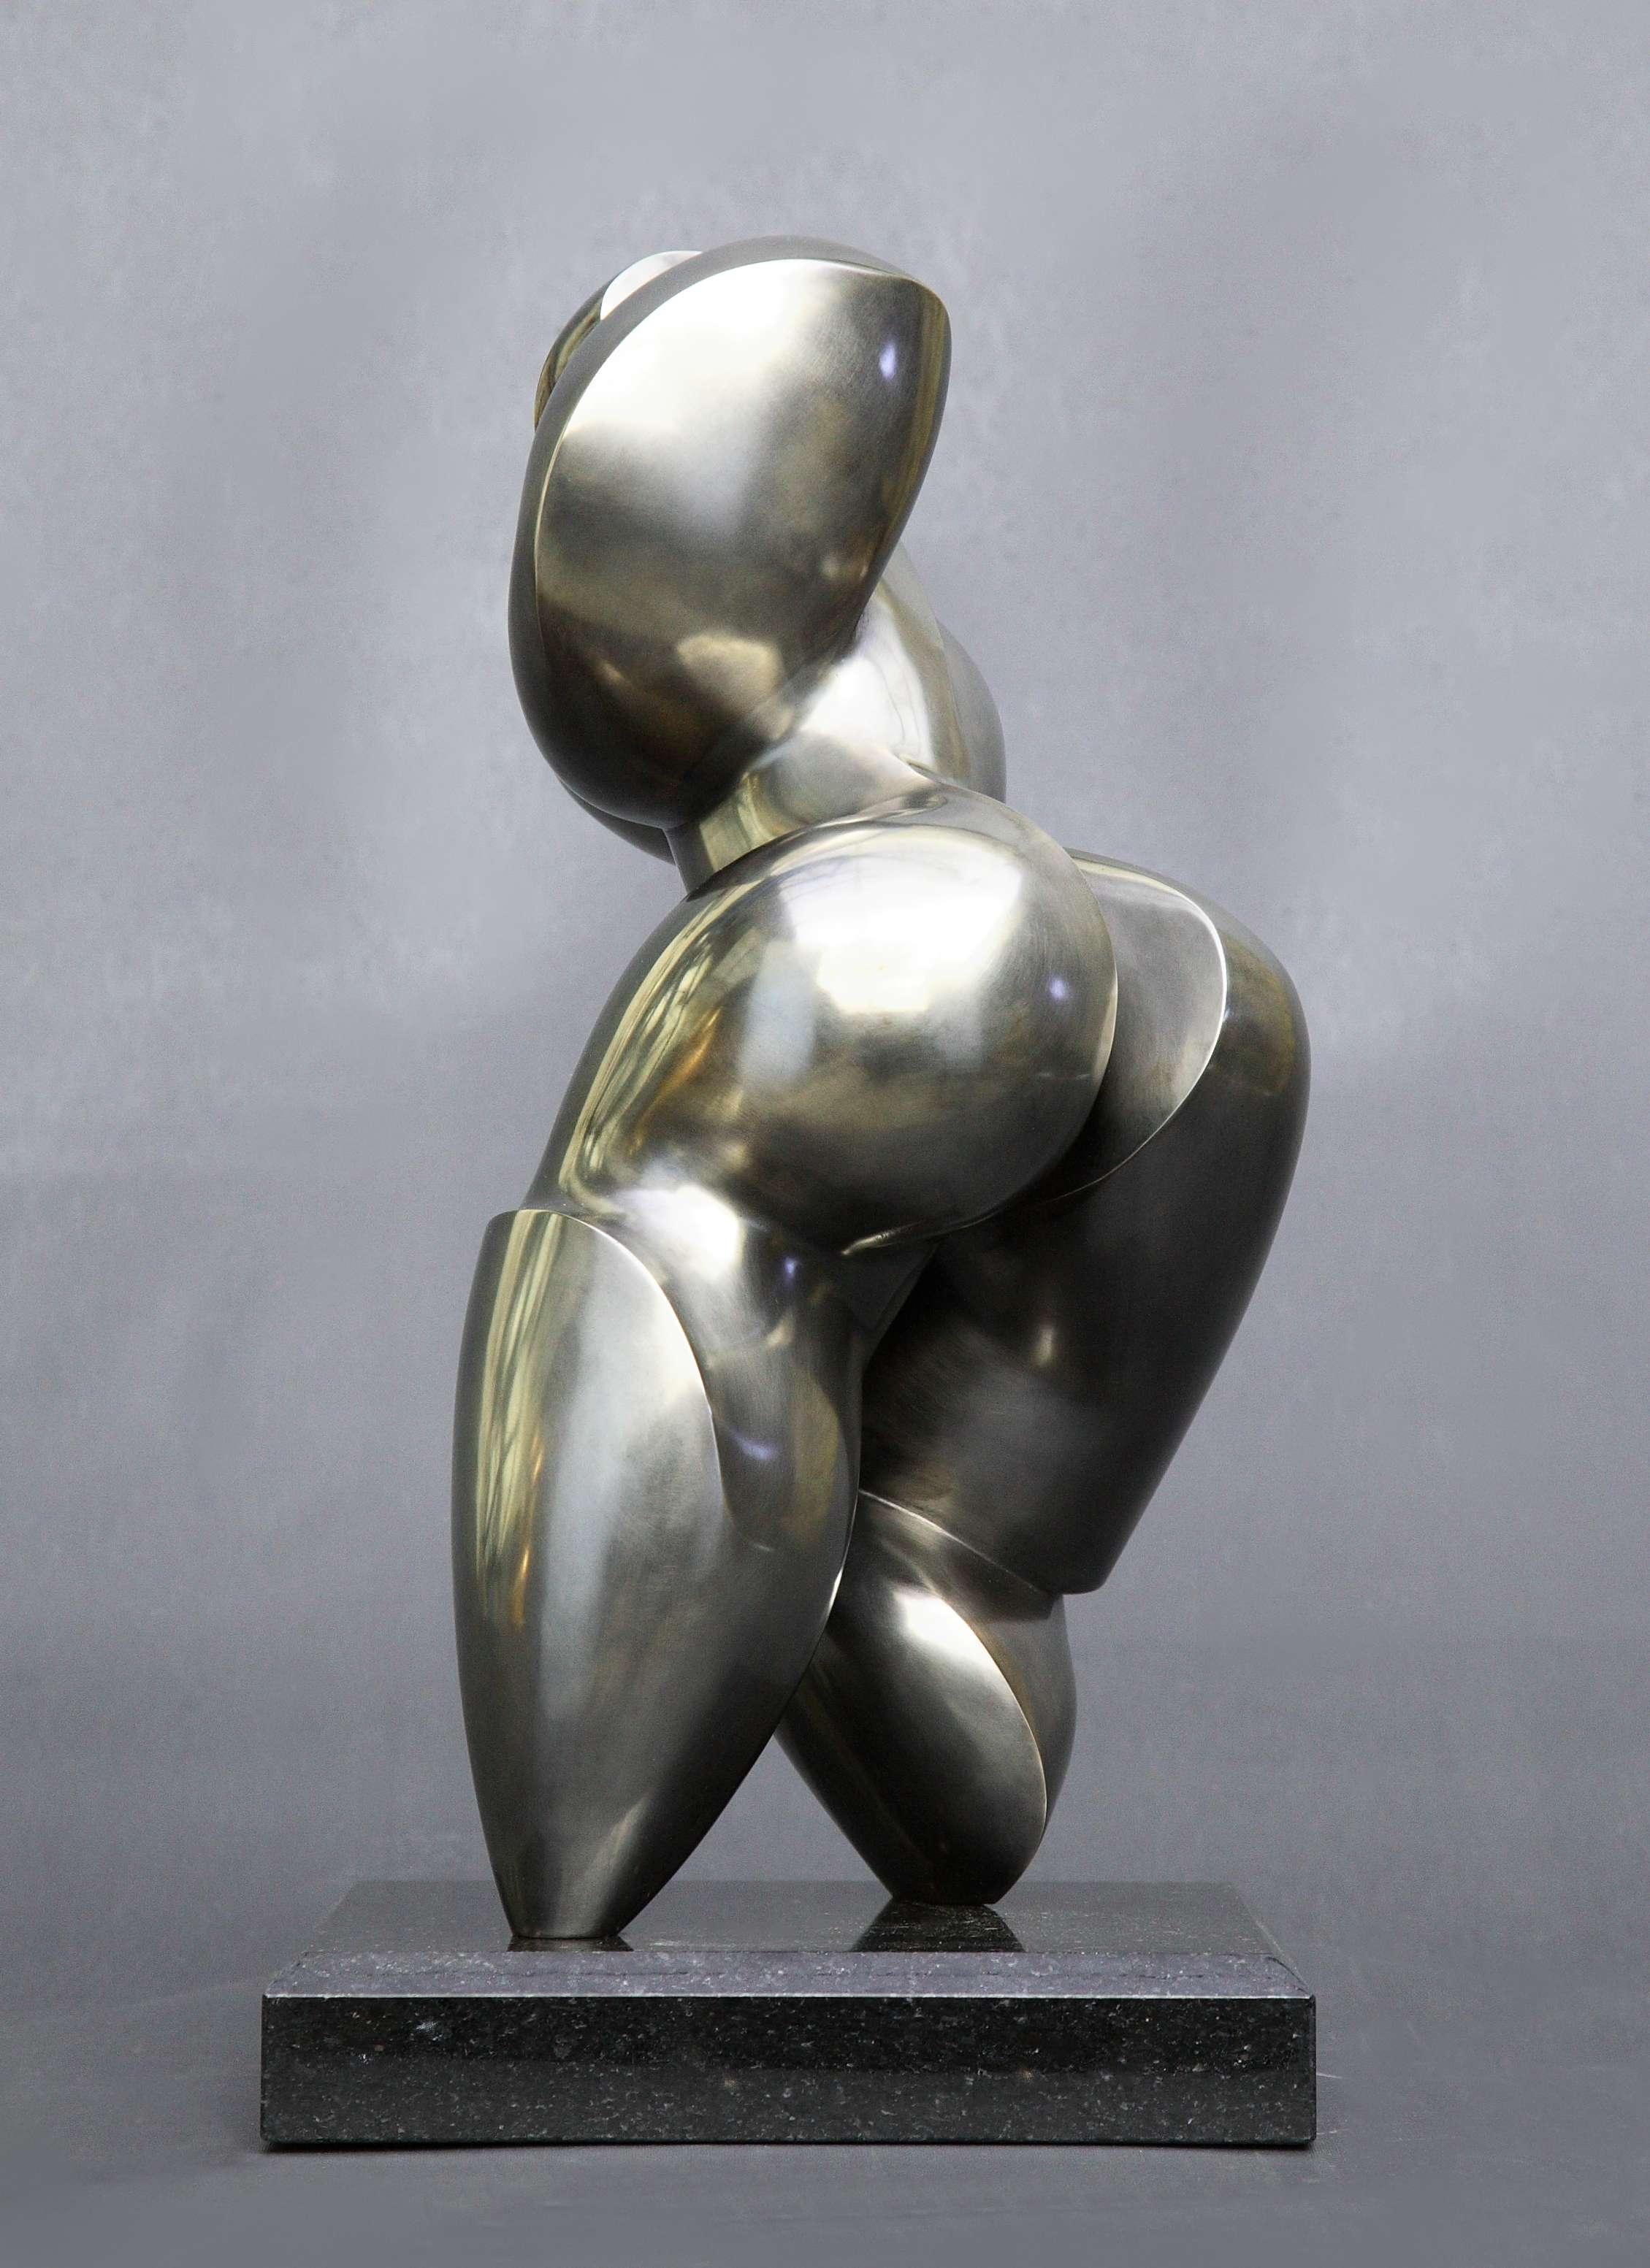 Pollès - Sculpture en bronze - Schweppsy
Bronze
4/4
Créé en 2010, casté en 2014
42 x 22 x 20 cm
Signé et numéroté

BIOGRAPHIE
Pollès est né à Paris en 1945
Comme Léonard de Vinci à la recherche de la perfection anatomique, de la représentation du